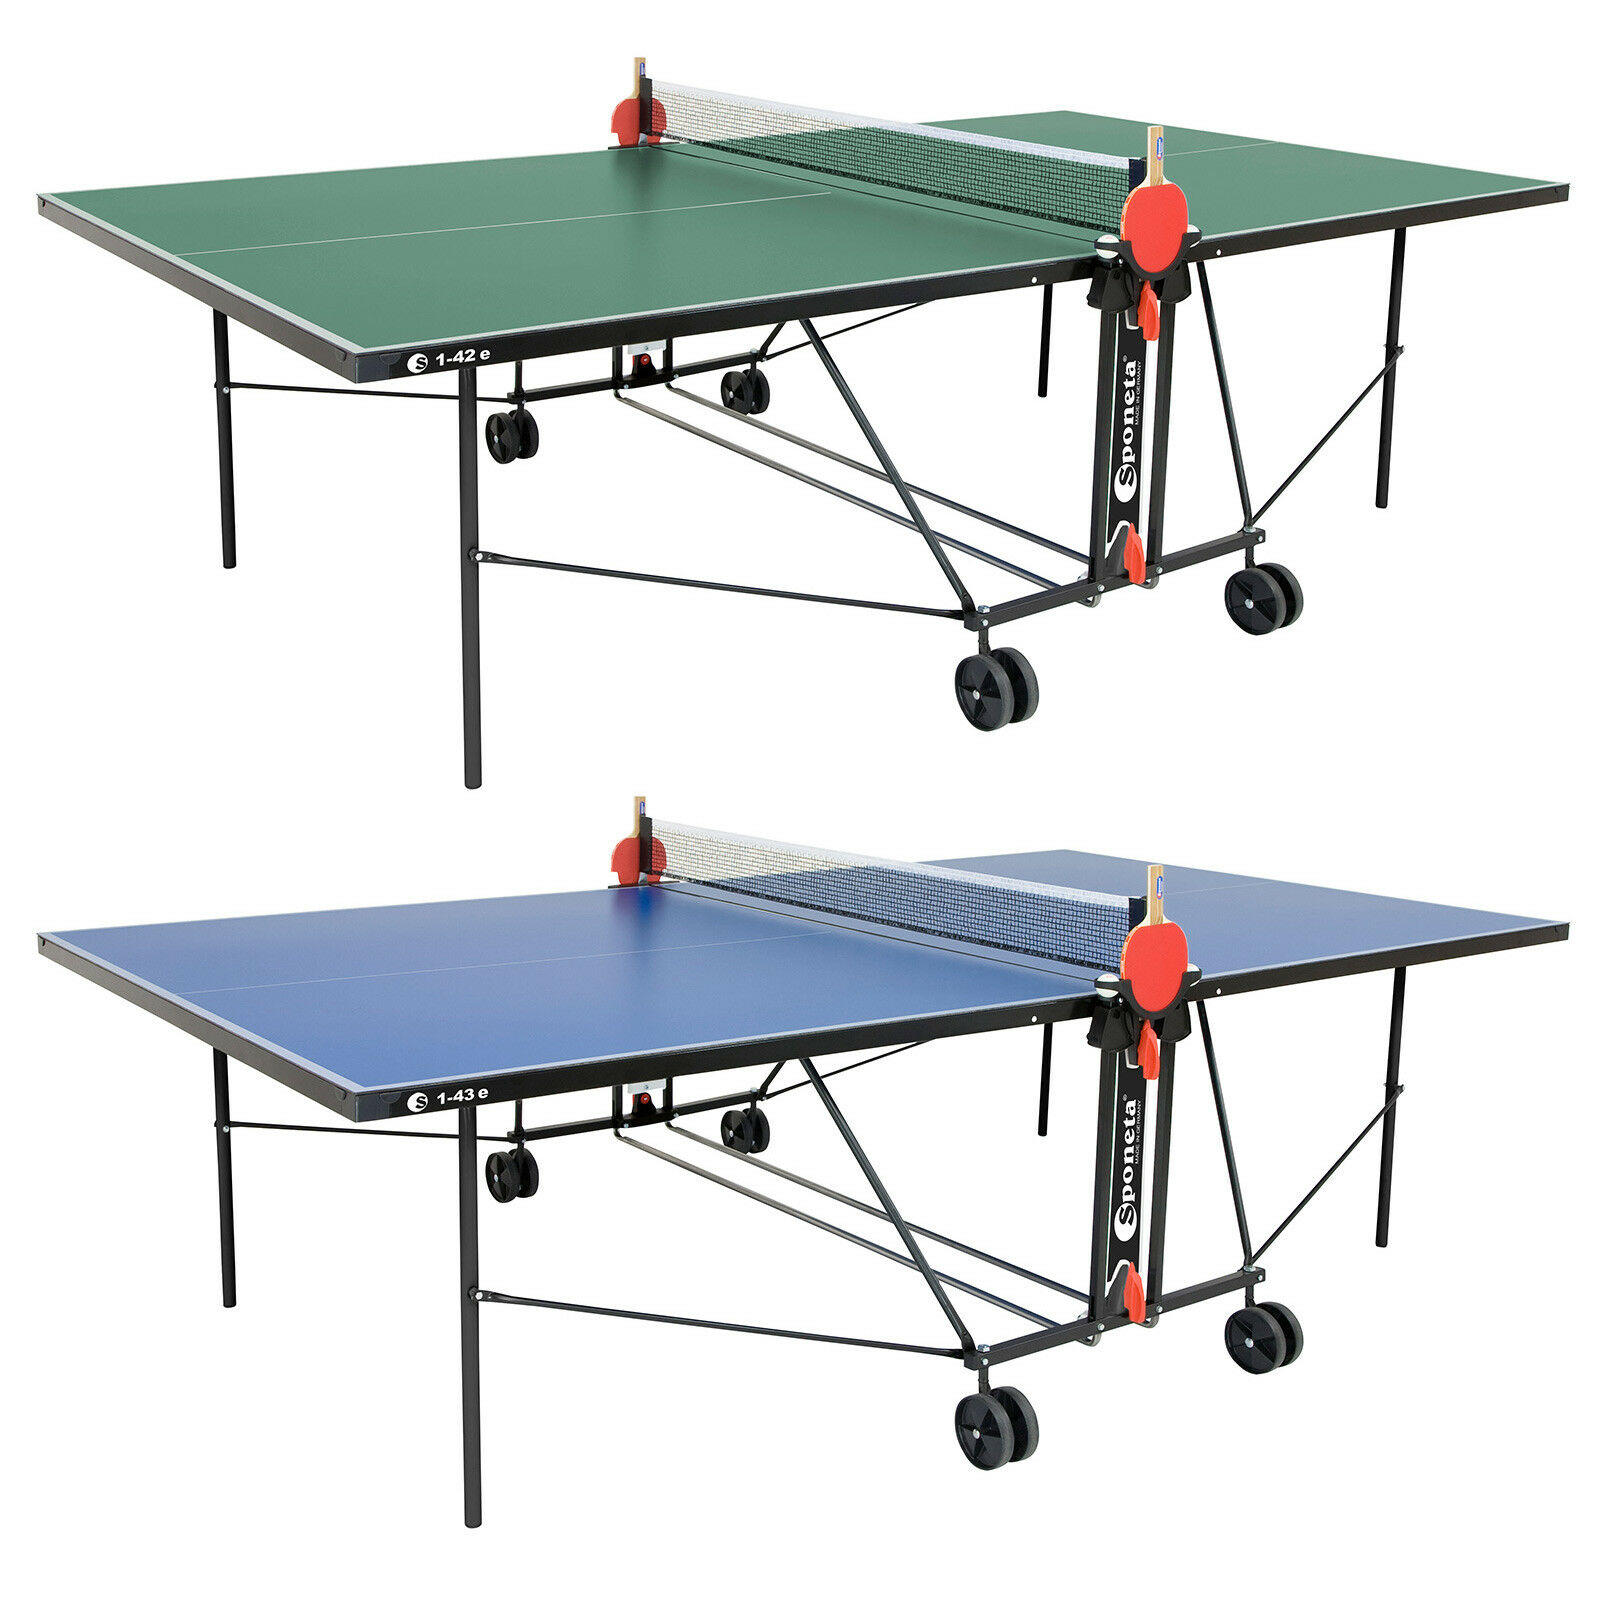 Aldi Sponeta Outdoor Tischtennisplatte S1 43e Im Test Preisvergleich